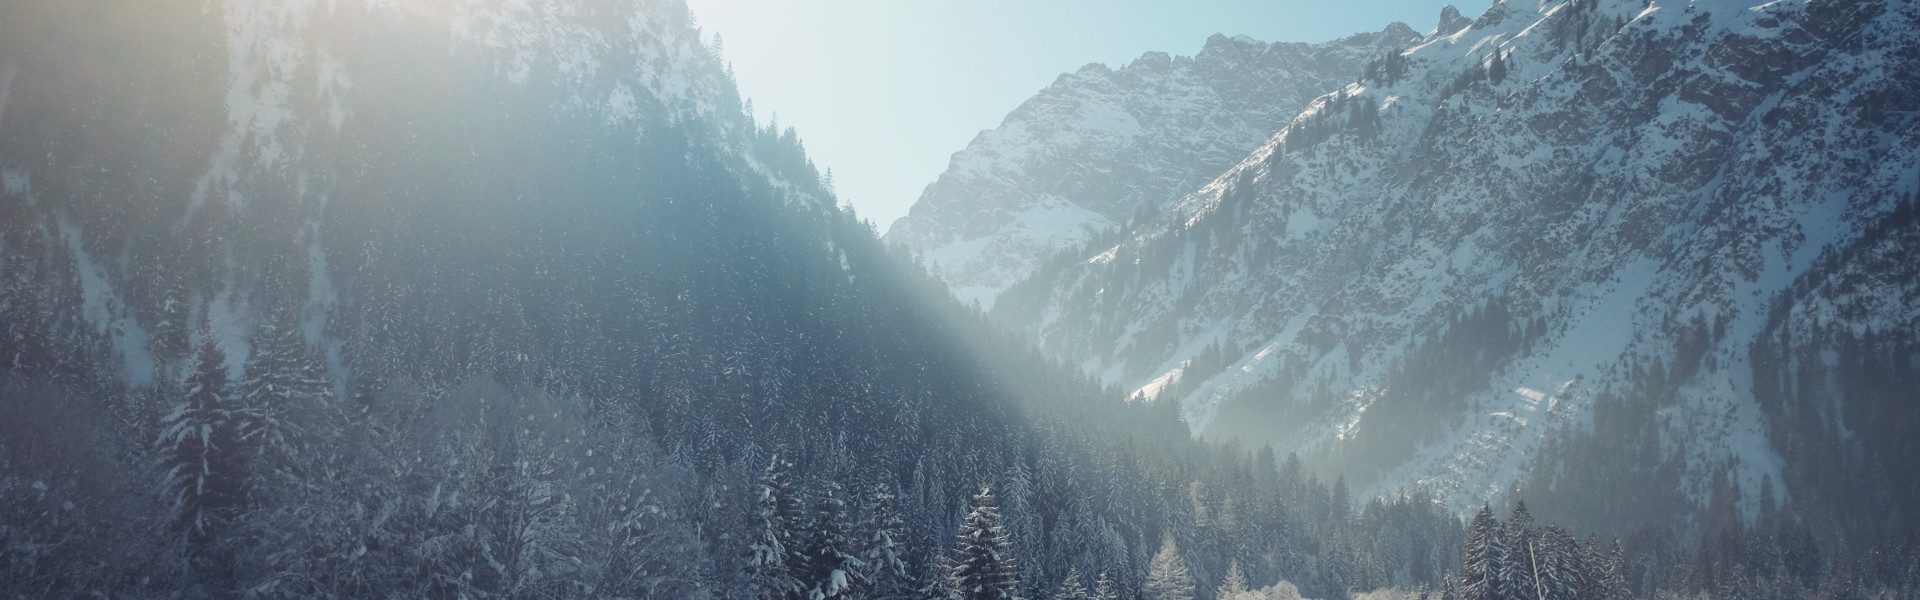 Pour des vacances d'hiver inoubliables : cap sur la montagne !